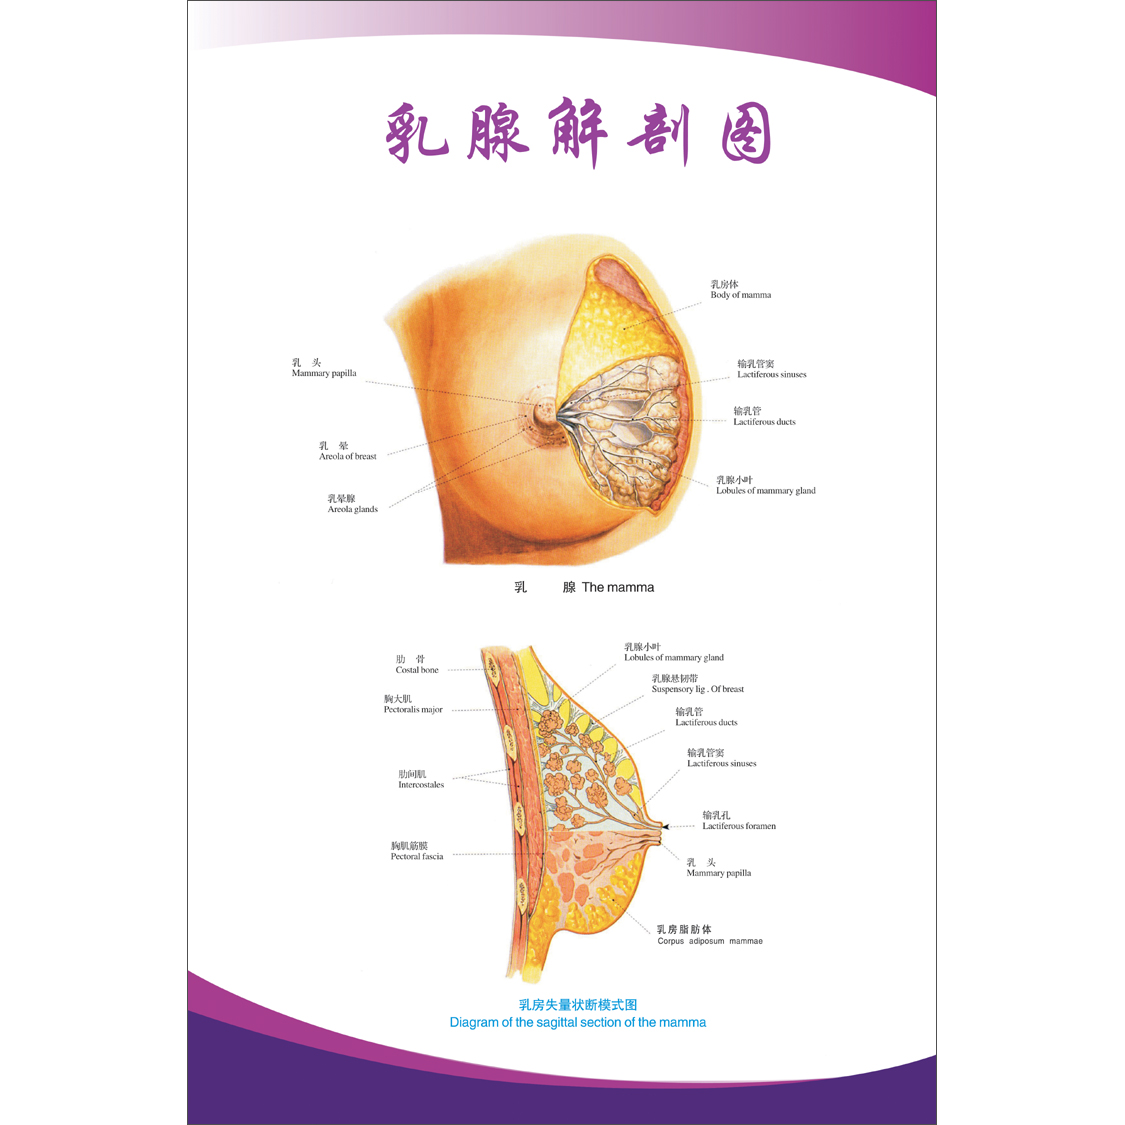 女性乳房结构图矢状解剖构造图胸部乳腺健康疾病保养经络穴位海报